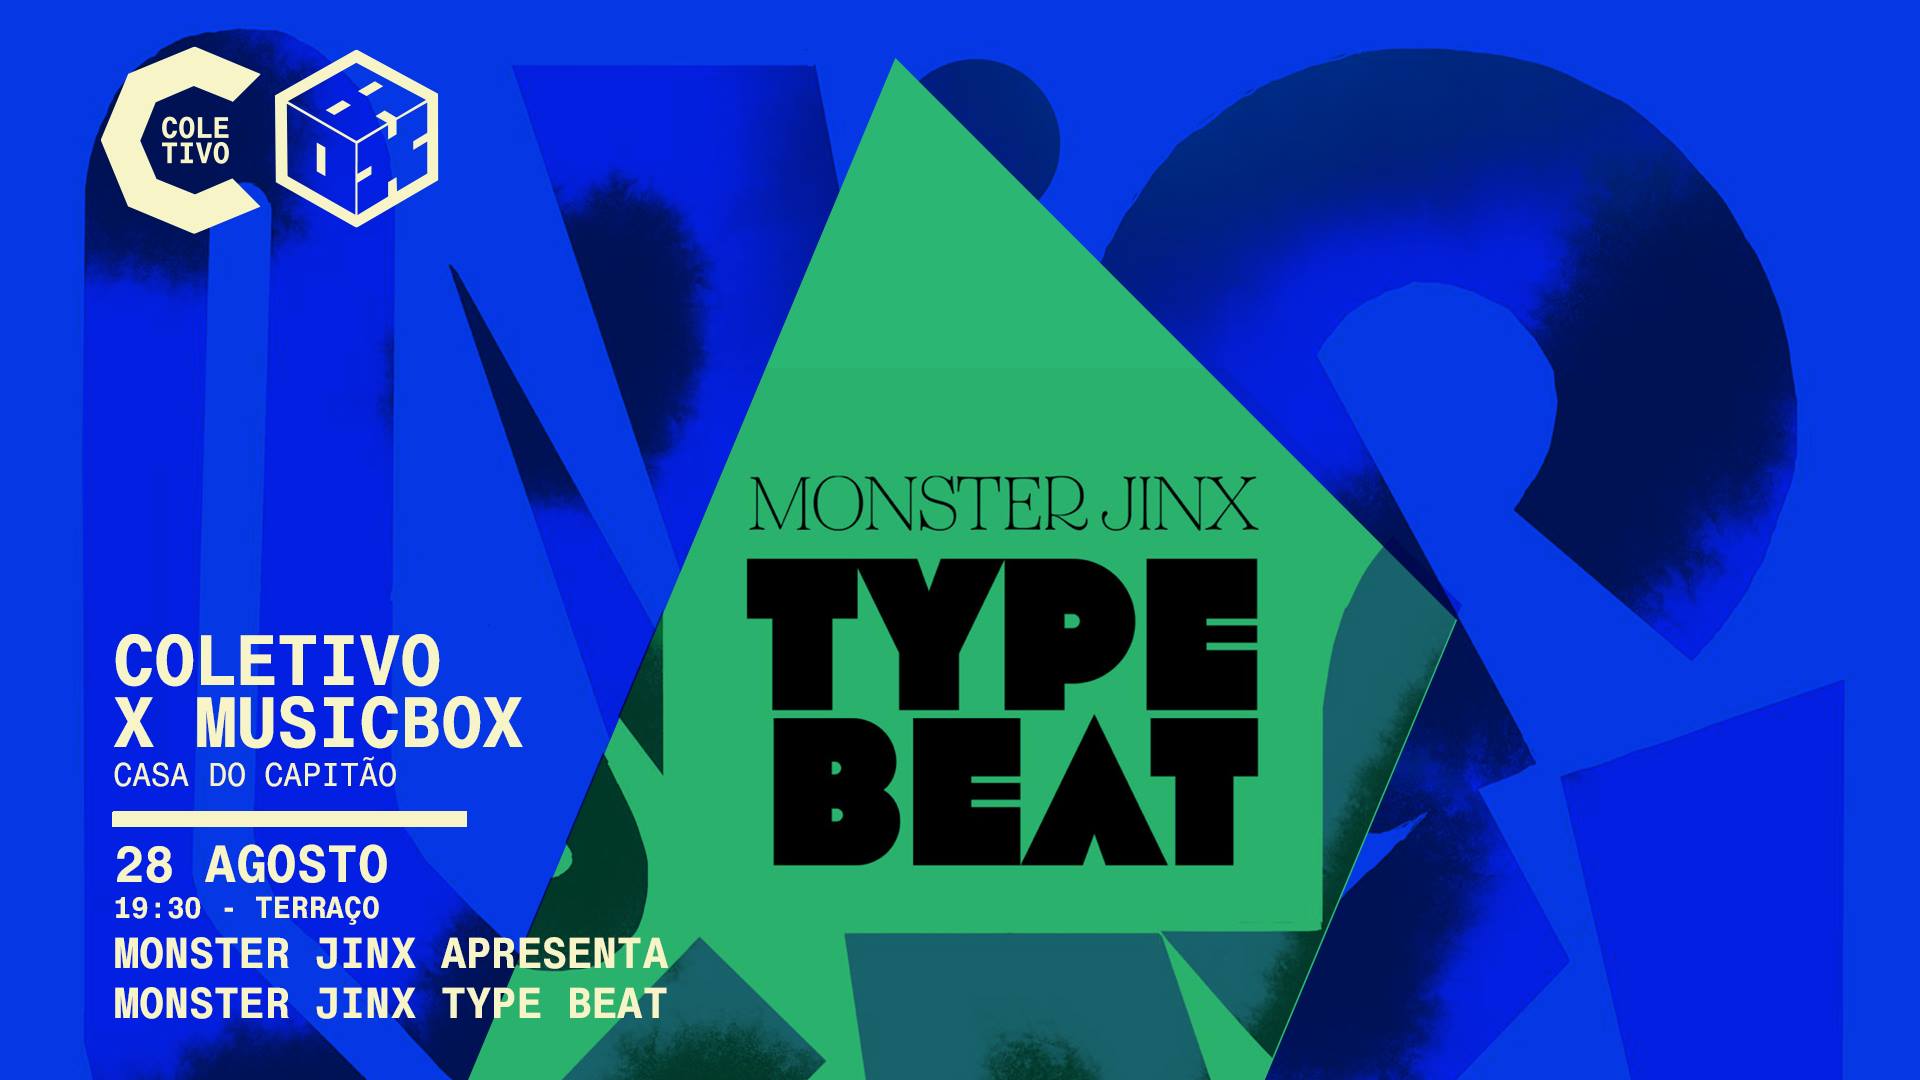 Coletivo | Monster Jinx apresenta Monster Jinx Type Beat • concerto no terraço